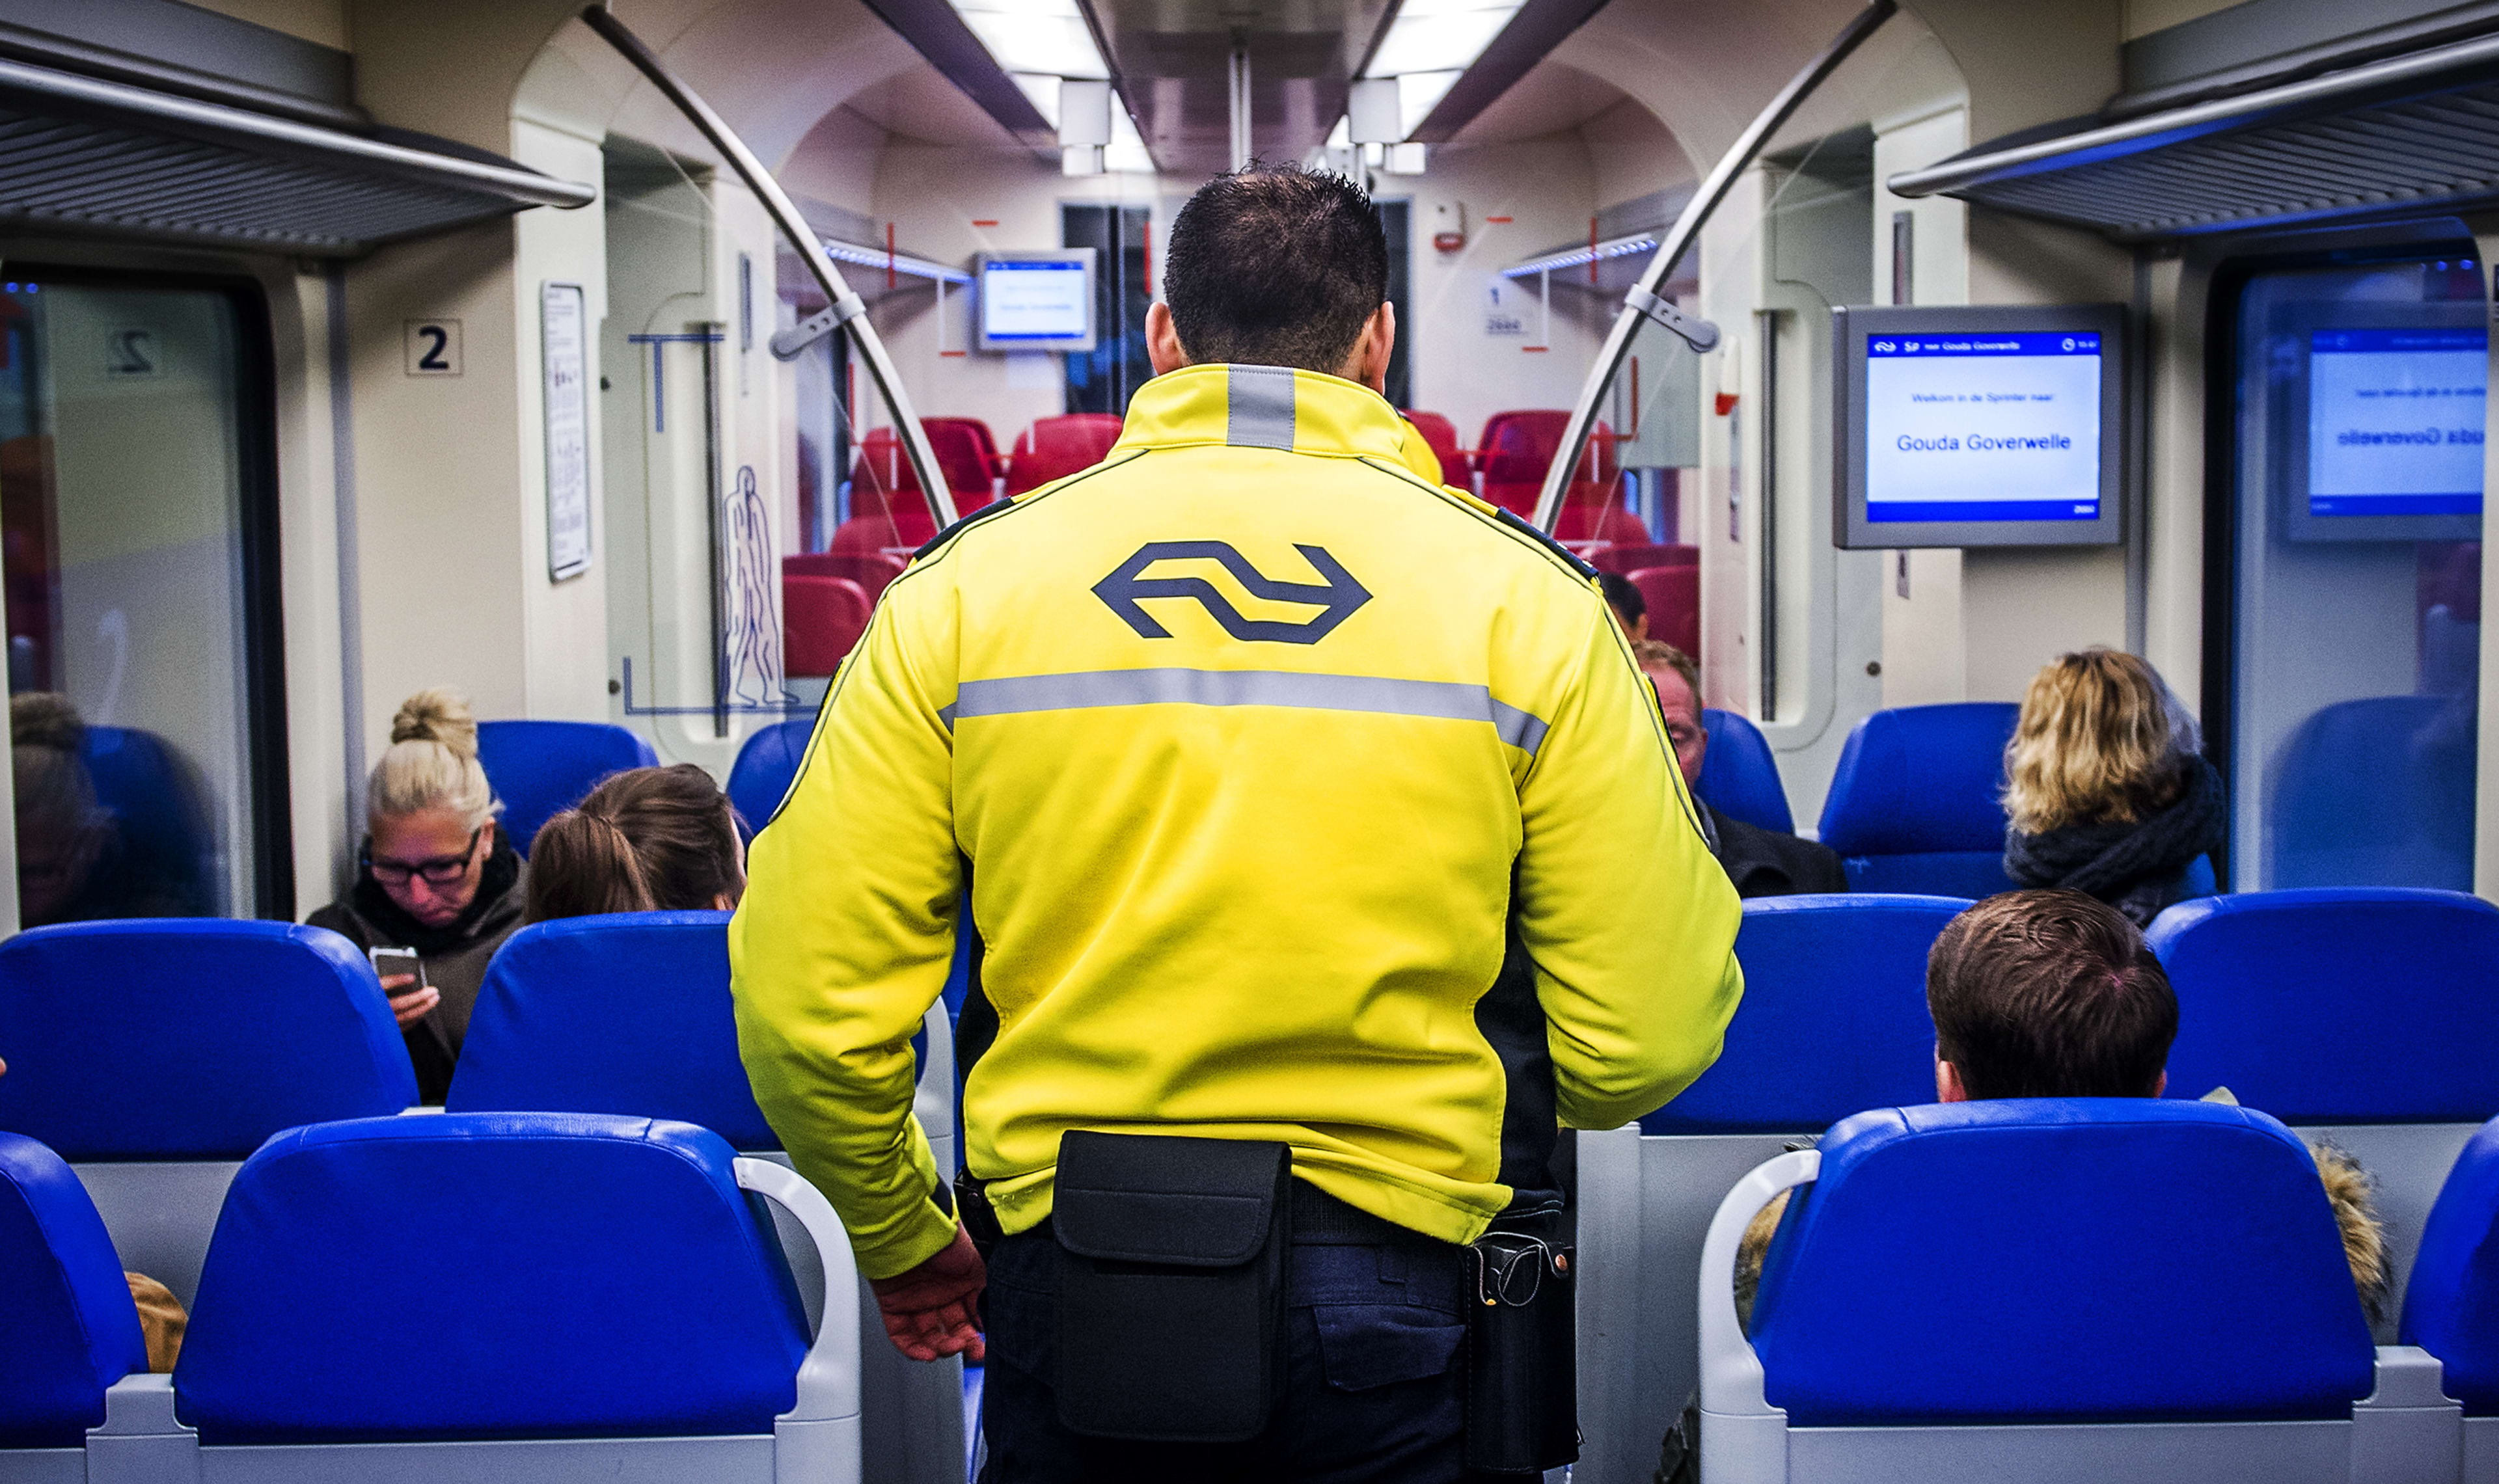 Man laat geslachtsdeel zien in trein, politie zoekt getuigen